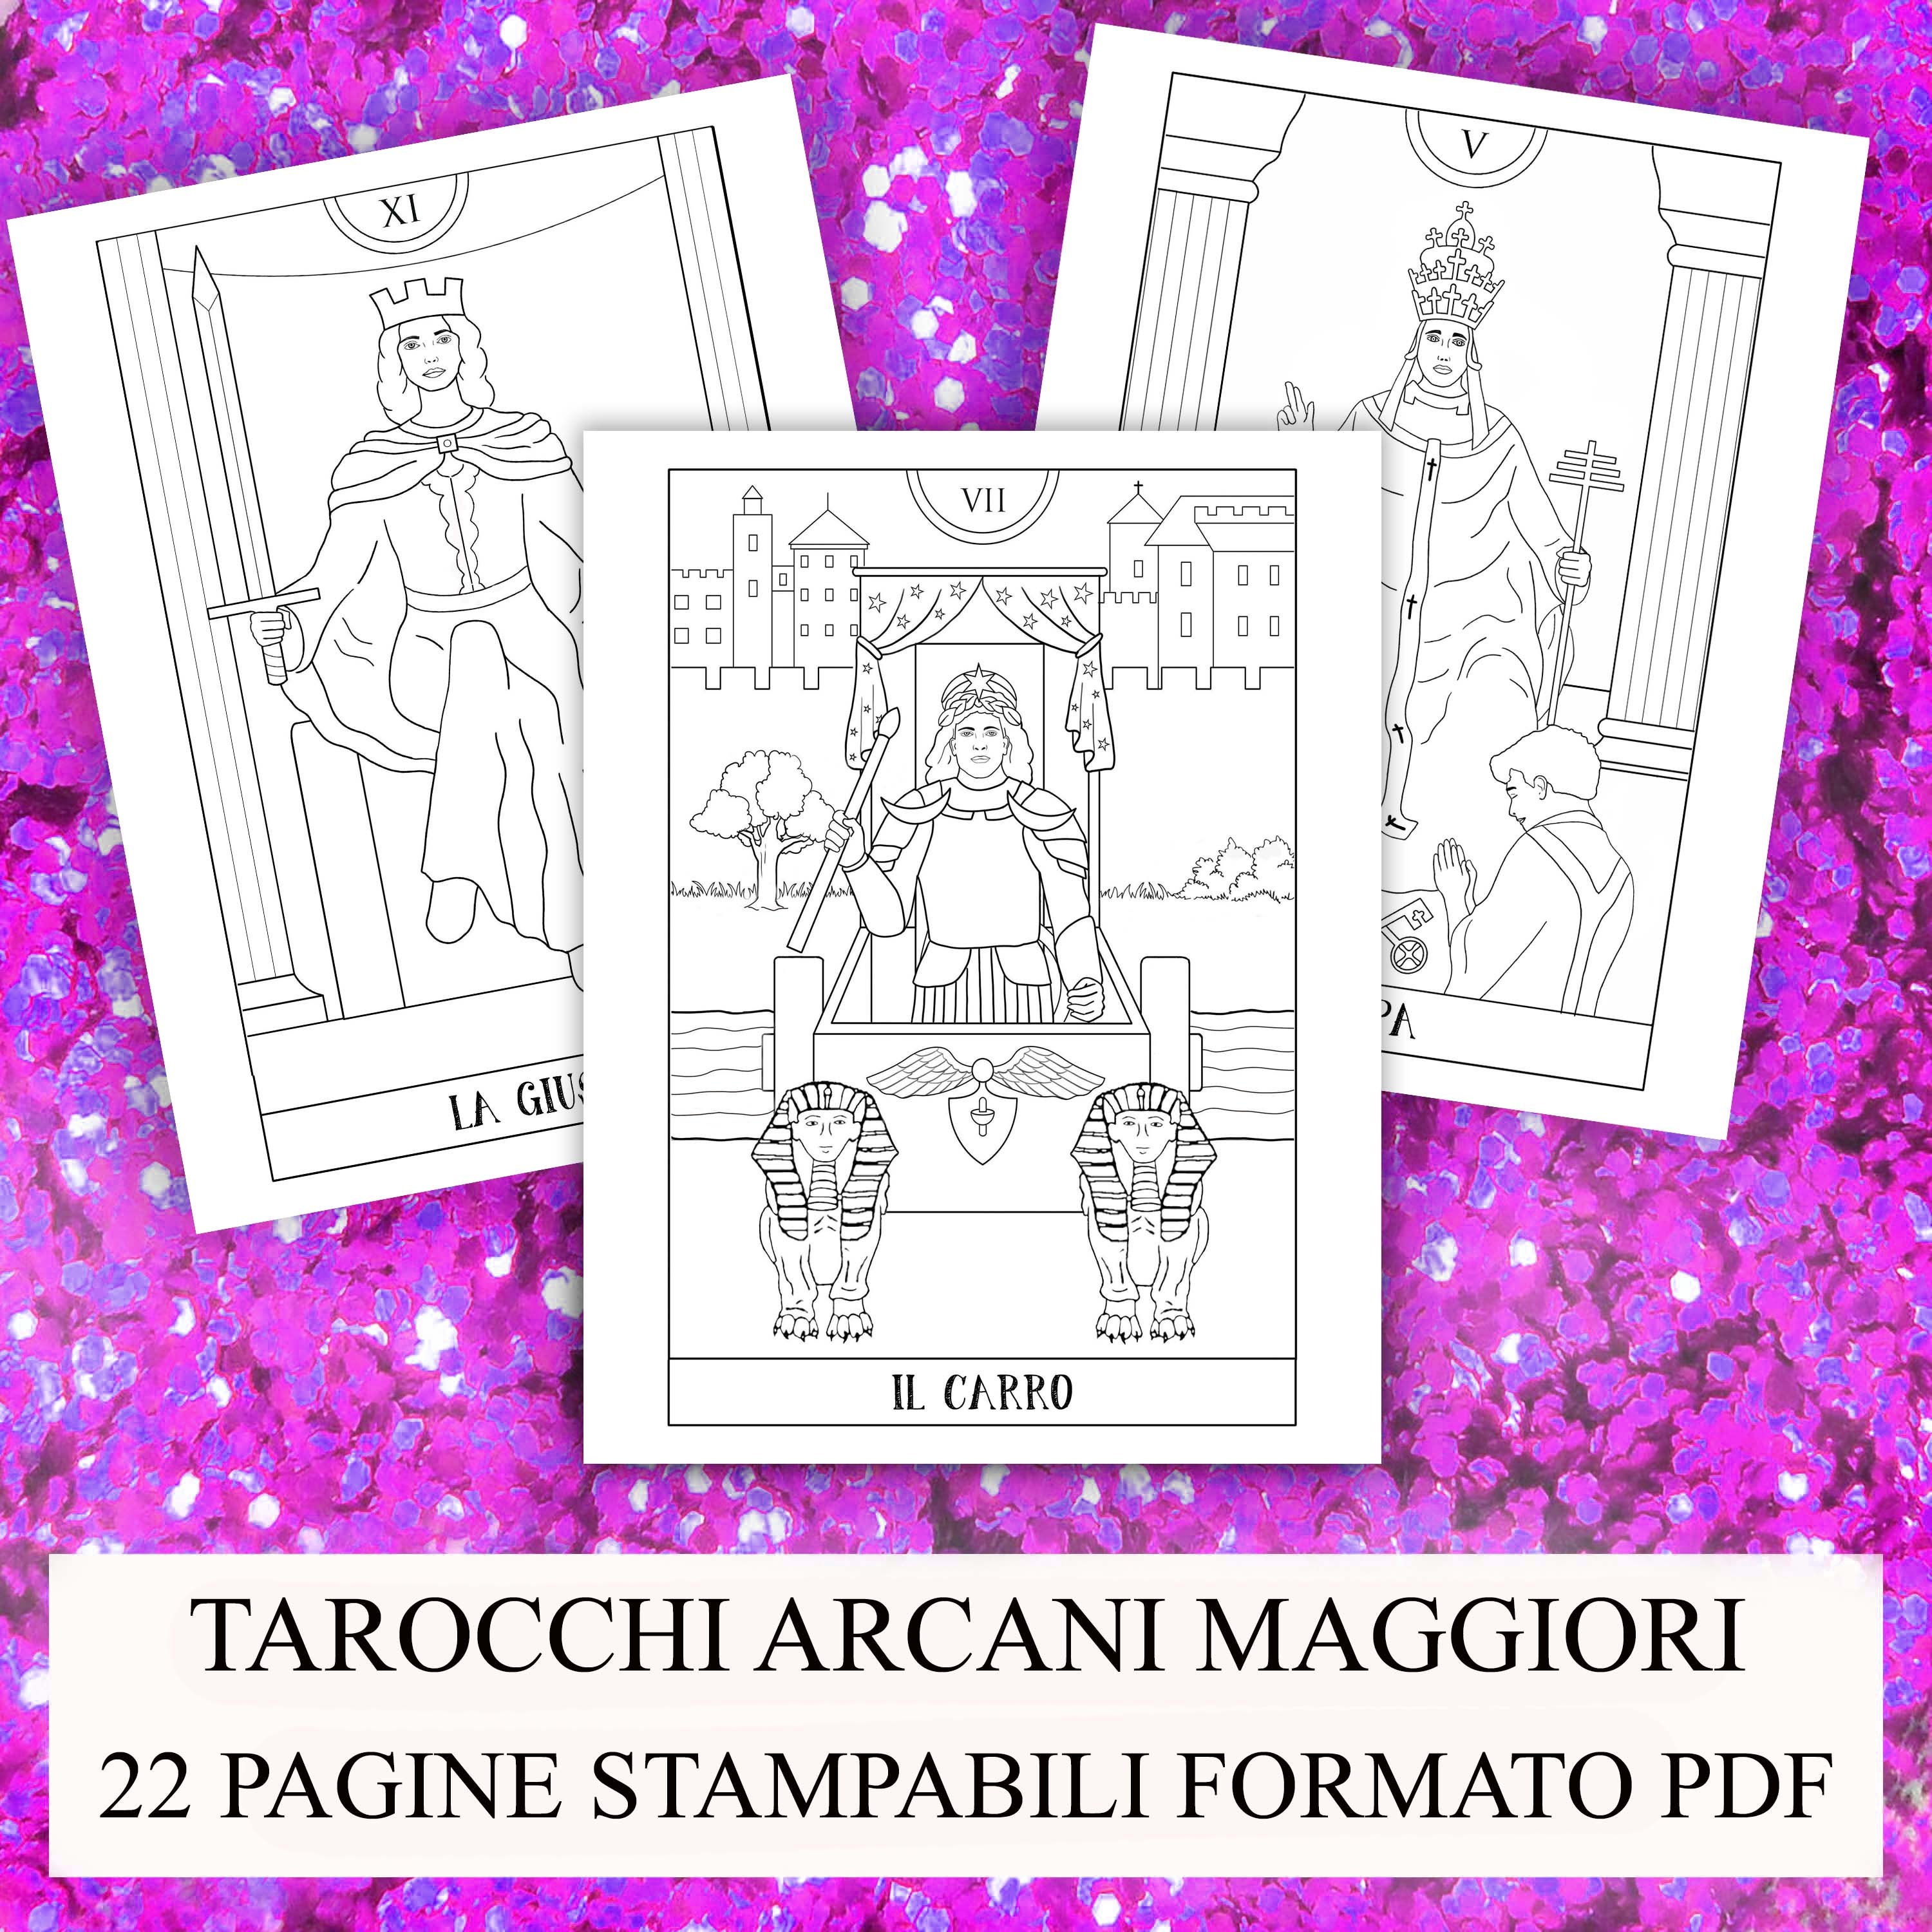 Download PDF DIGITAL Tarot coloring book 22 printable handmade drawings | Etsy